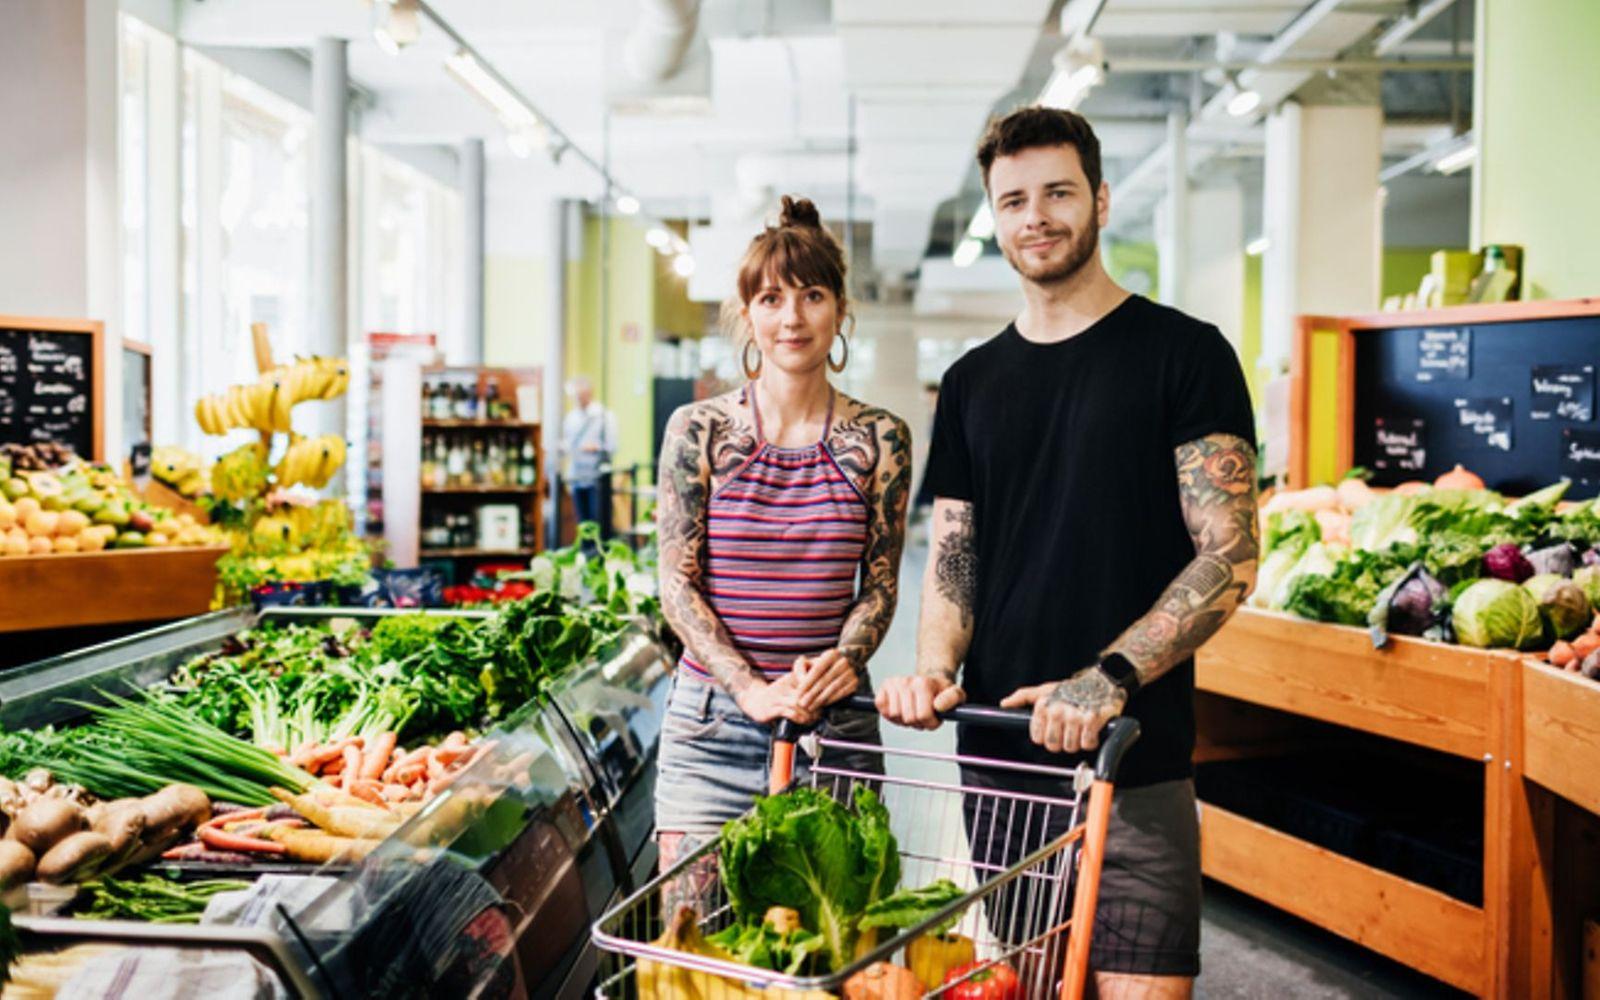 Vegane Ernährung und Nährstoffe: Junges Paar steht mit einem gefüllten Einkaufswagen in der Obst- und Gemüseabteilung.